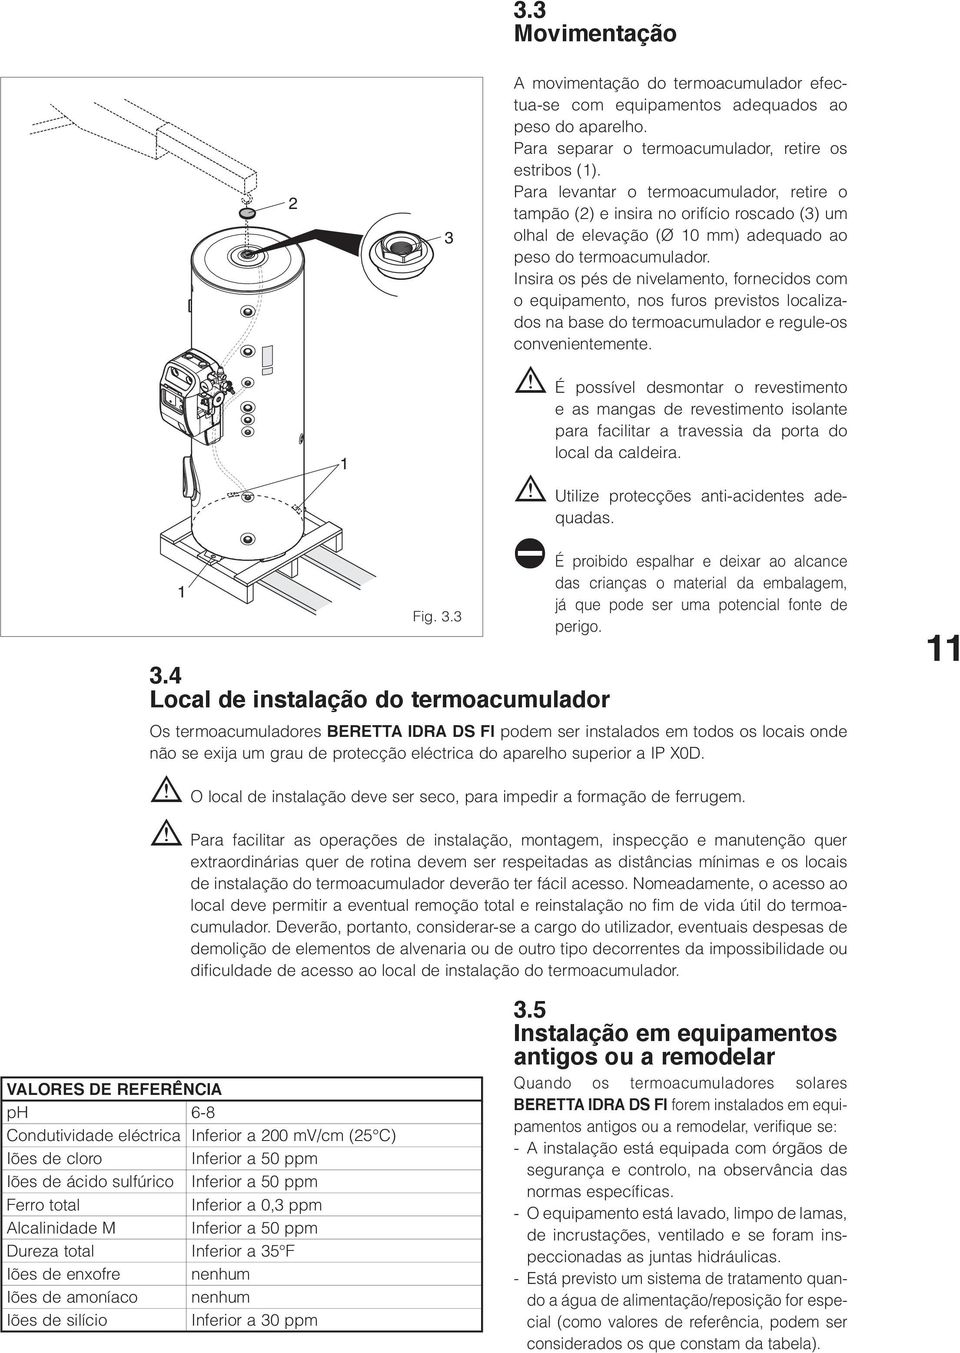 Para levantar o termoacumulador, retire o tampão (2) e insira no orifício roscado (3) um olhal de elevação (Ø 10 mm) adequado ao peso do termoacumulador.